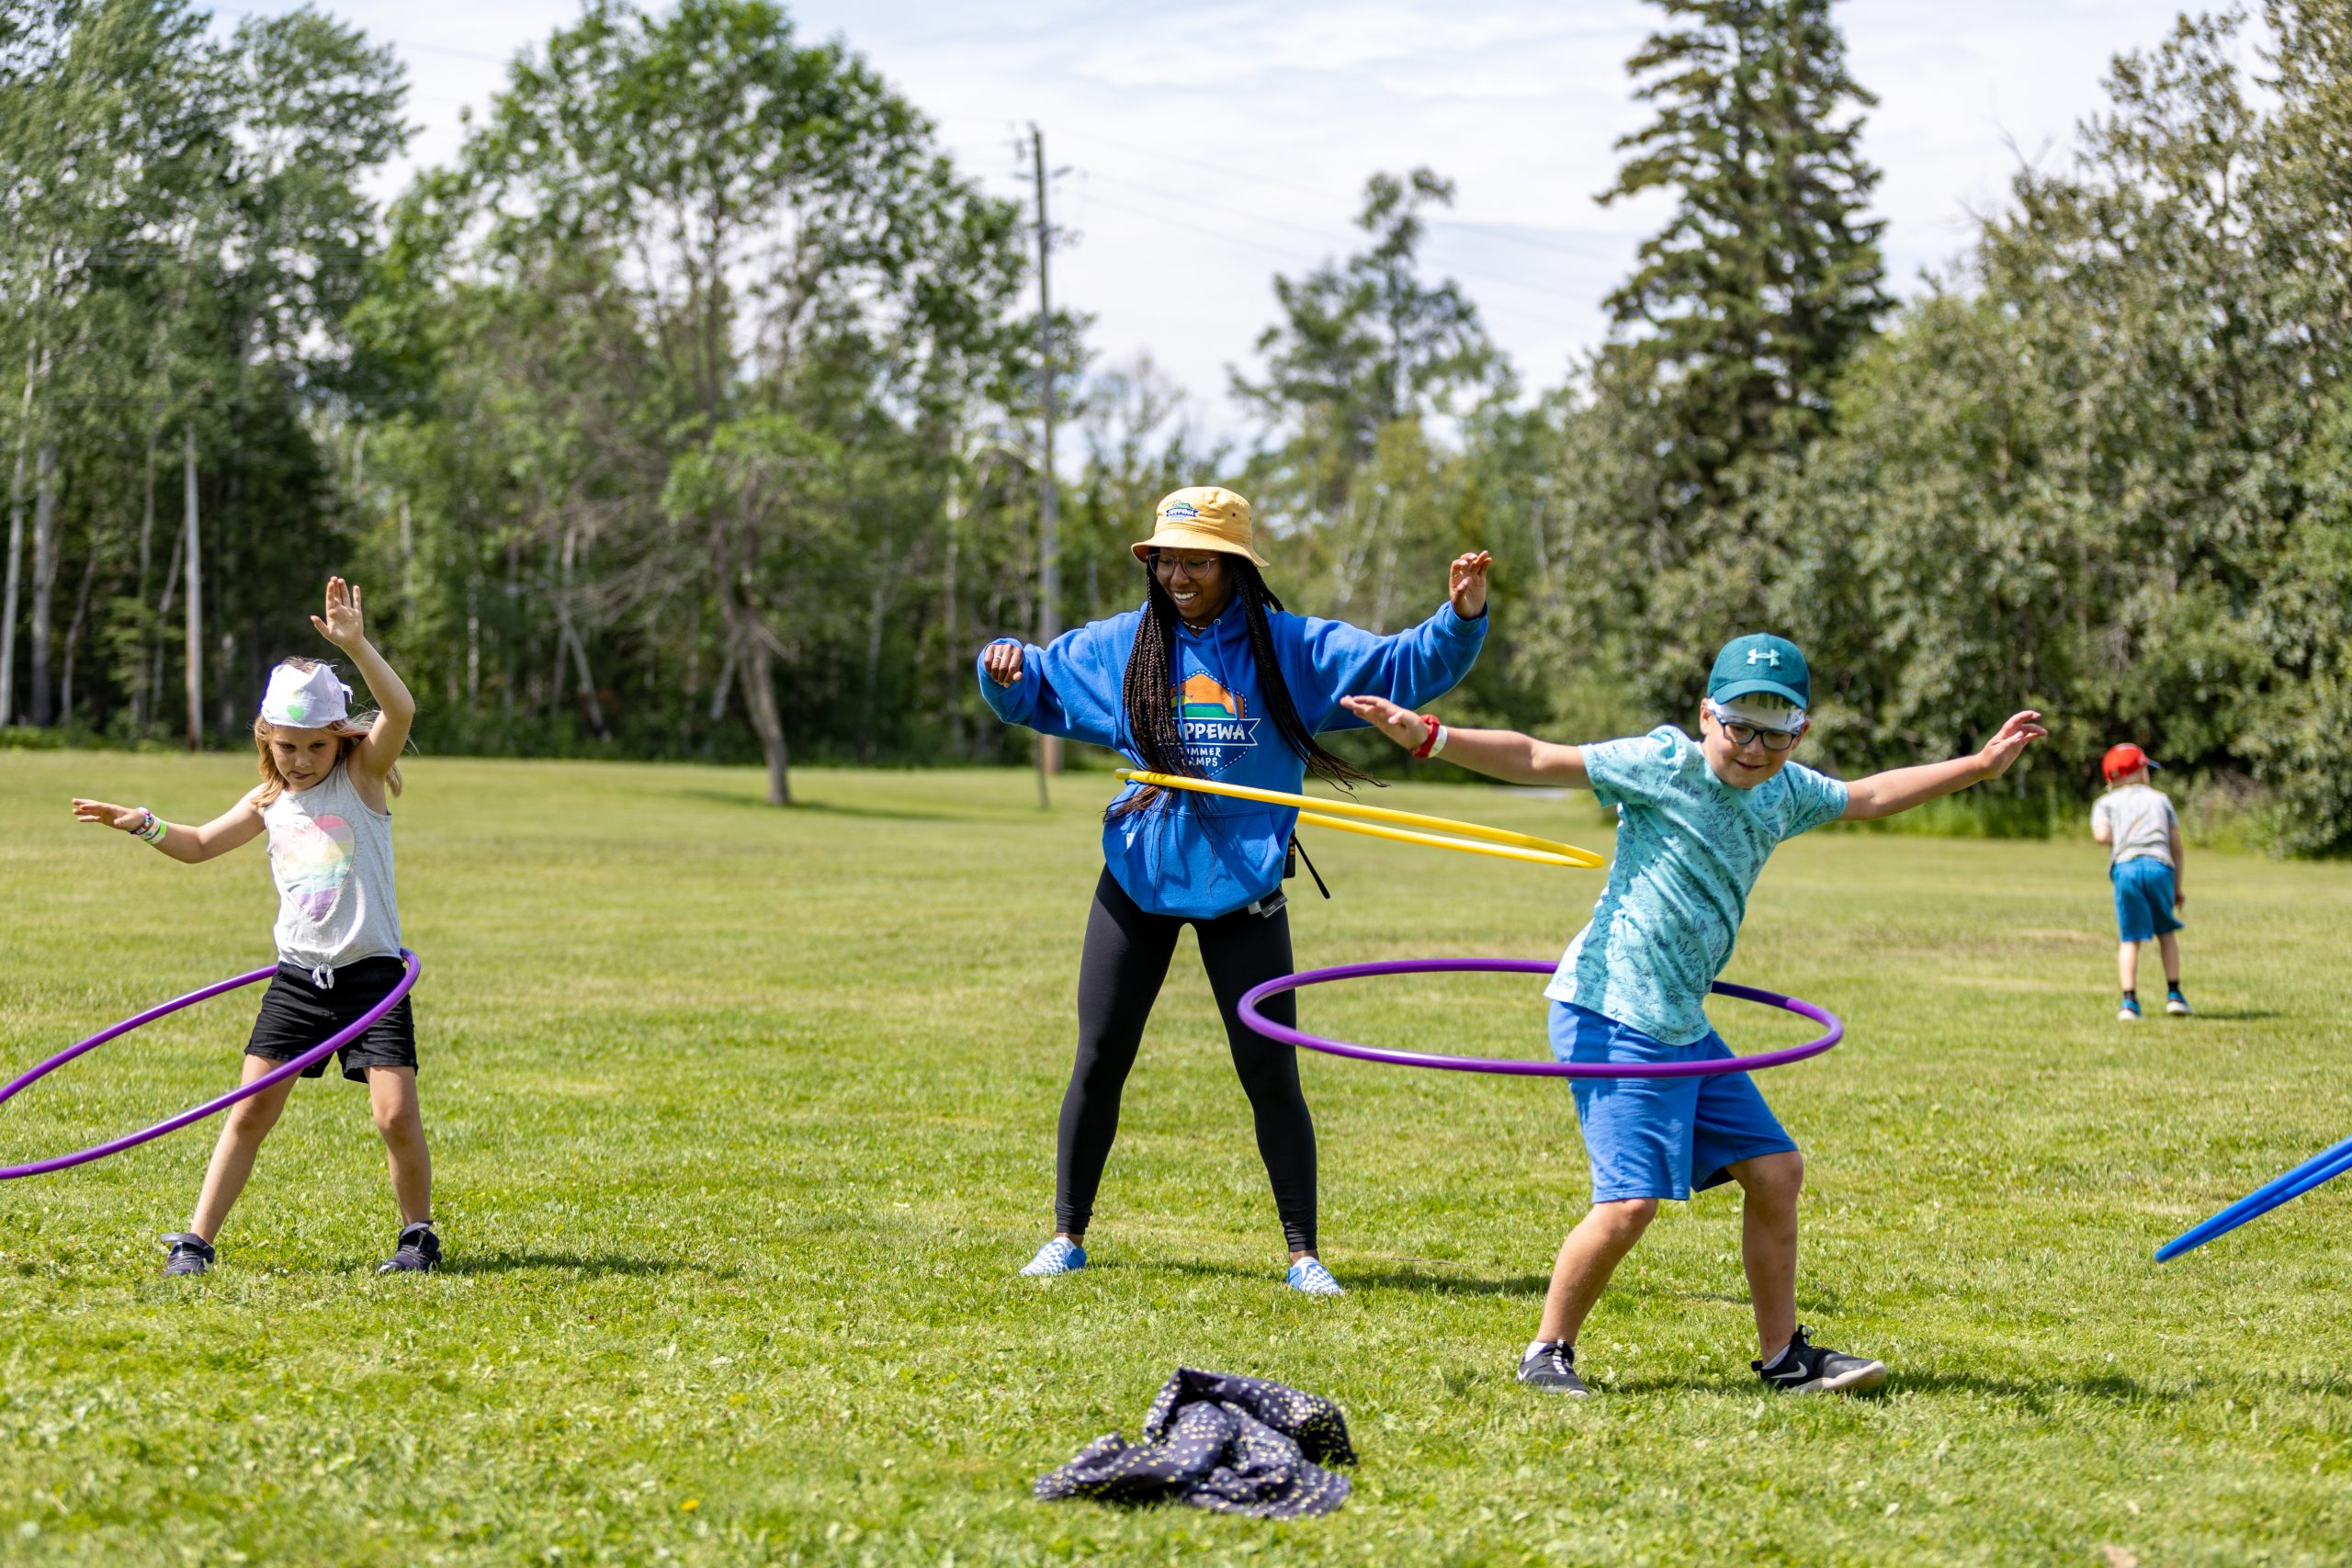 Chippewa staff and participants playing hula-hoop outside.